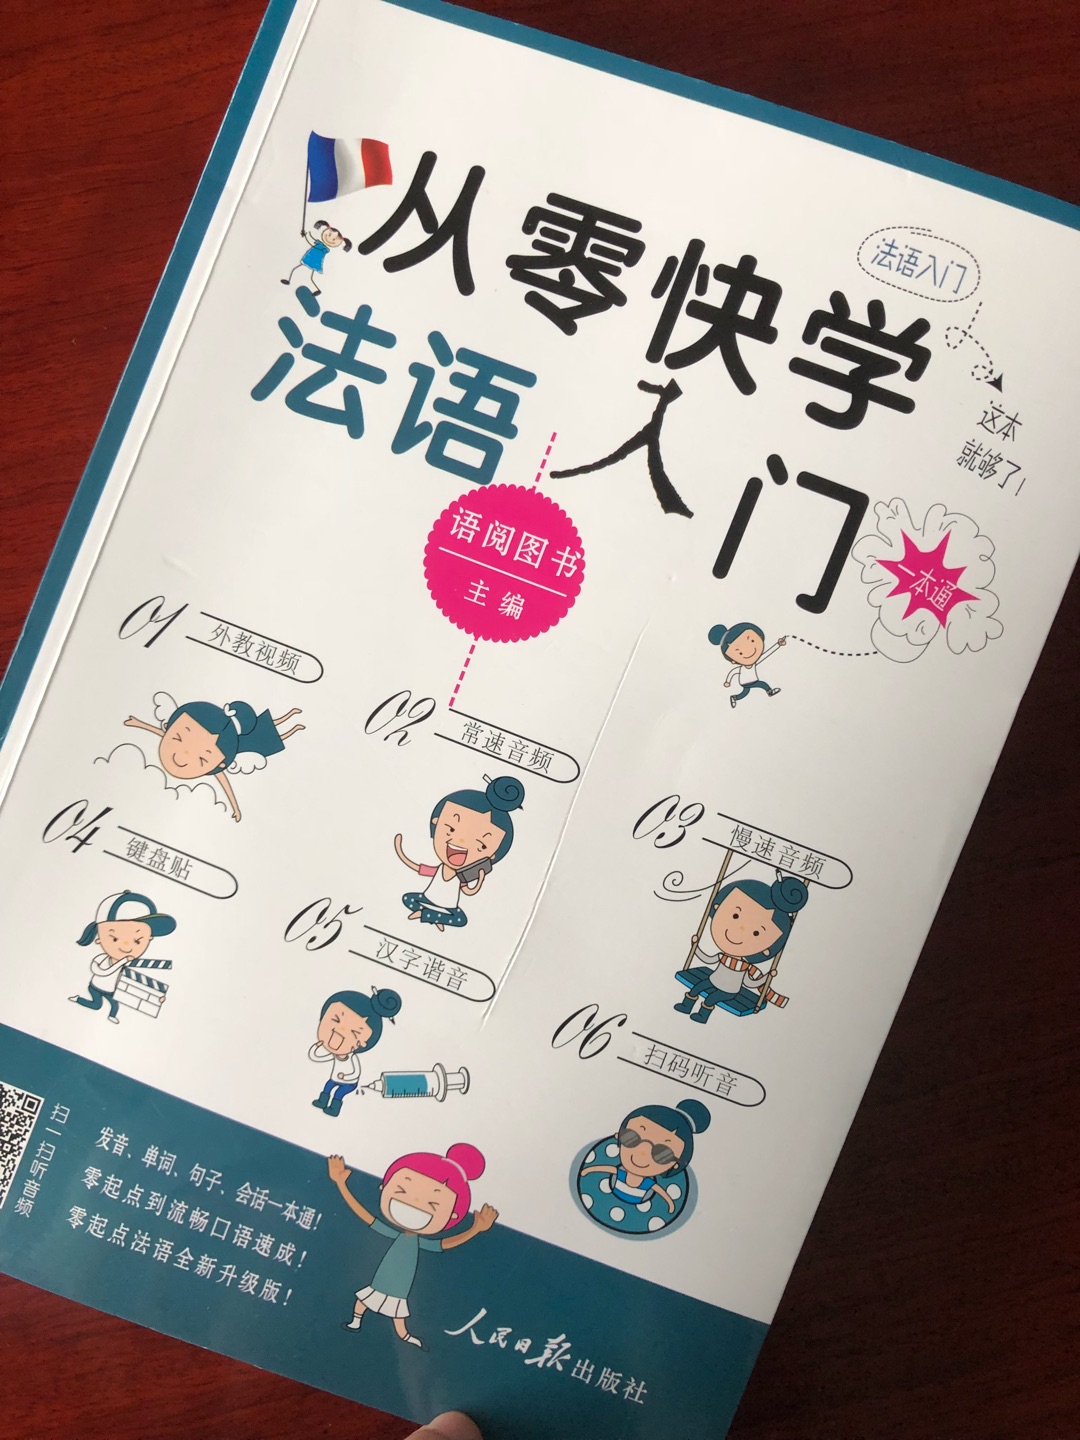 这本书对于快速入门很有效。发音部分清晰明了，附上中文谐音和标准的音标，应急或者好好学习的都可以。抛弃了麻烦的cd，用扫码听音频是个好主意。